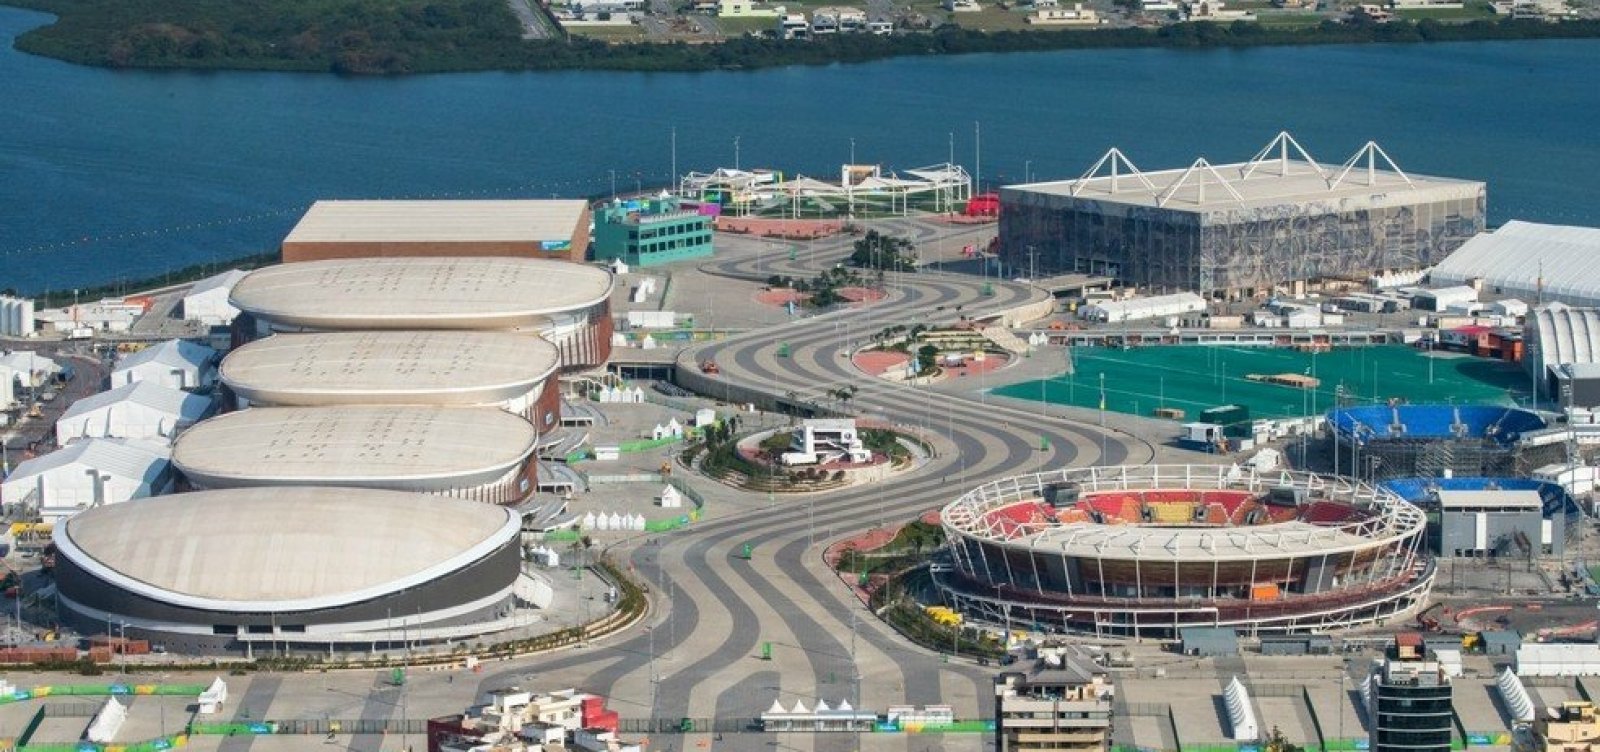 Justiça ordena interdição de instalações olímpicas do Rio